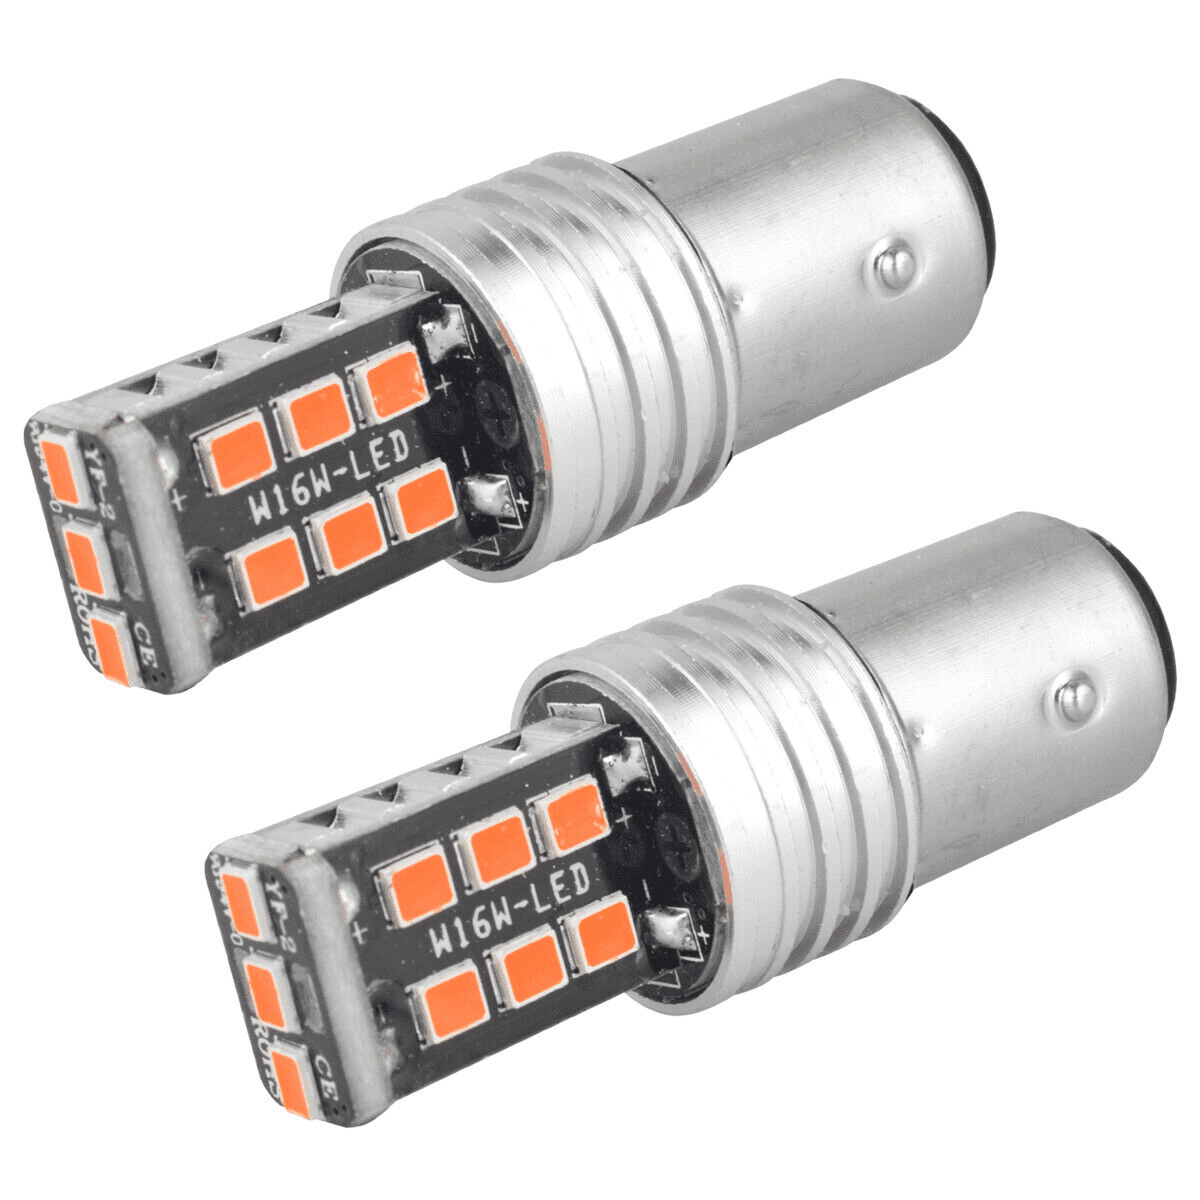 2 LED Light bulbs for Honda Motorcycle Grom MSX125 2019-2022 Turn